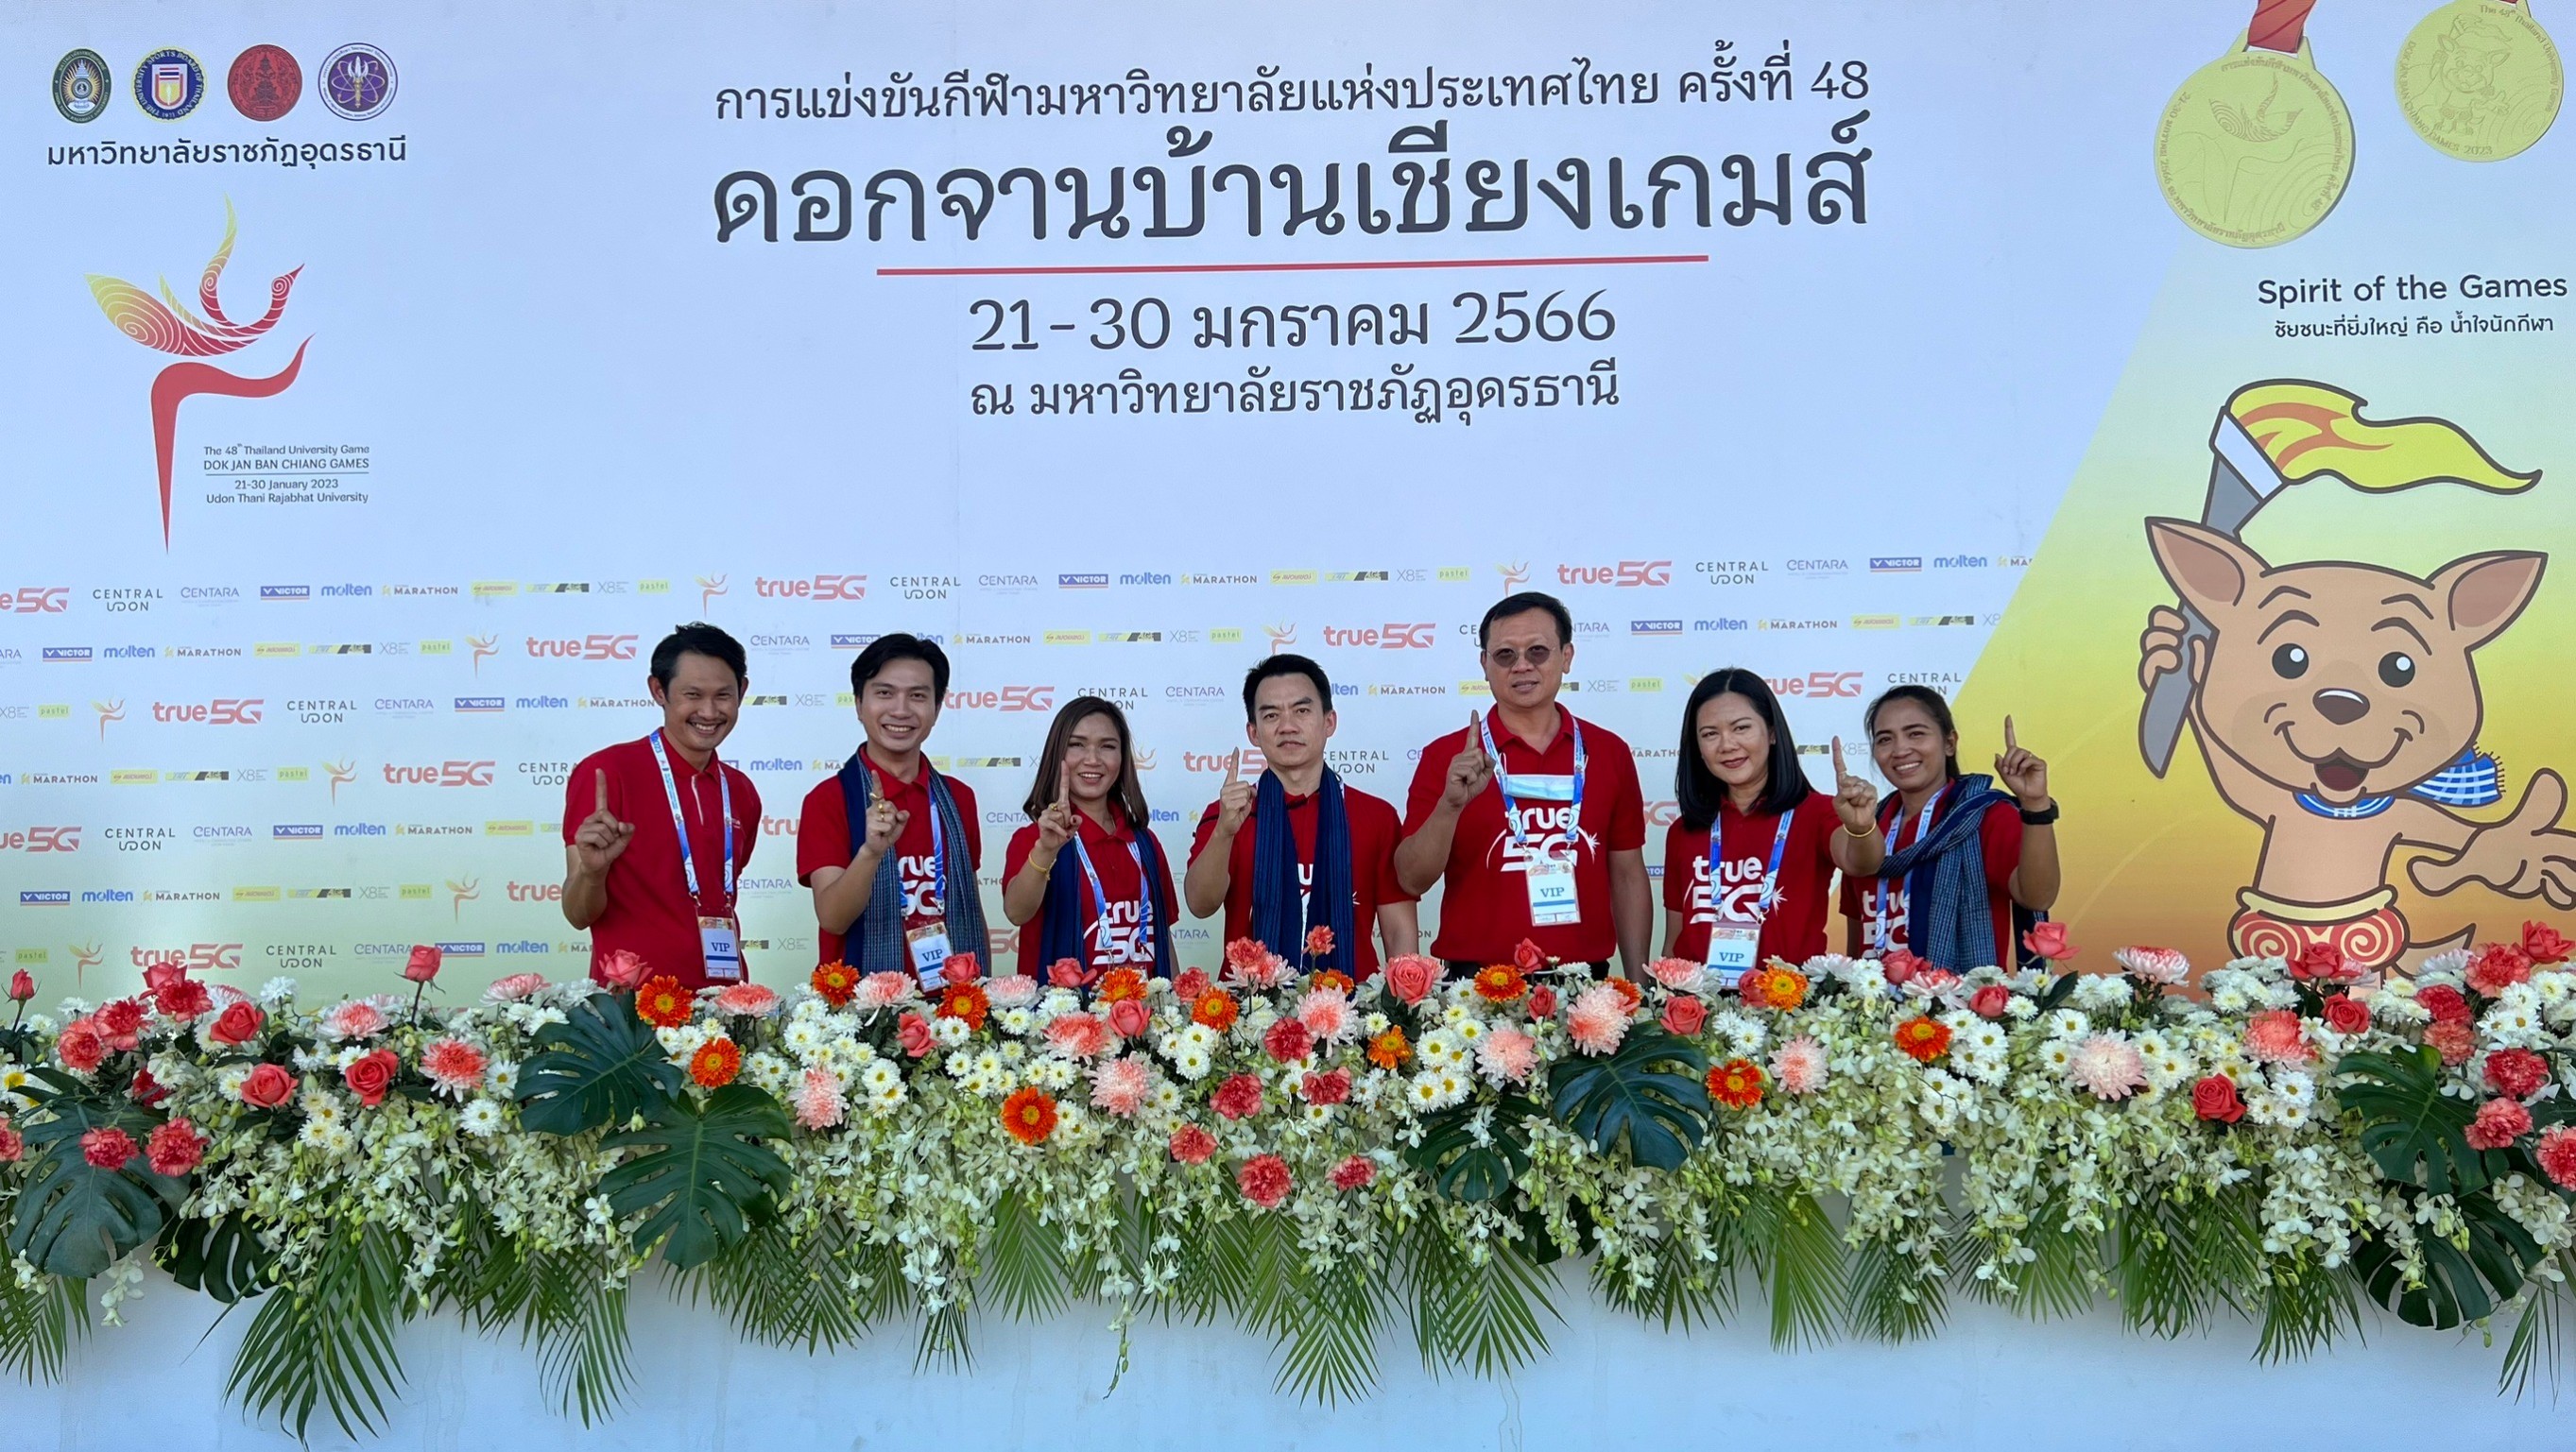 กลุ่มทรู สนับสนุนเต็มที่กีฬามหาวิทยาลัยแห่งประเทศไทย ครั้งที่ 48 ดอกจานบ้านเชียงเกมส์ จ.อุดรธานี